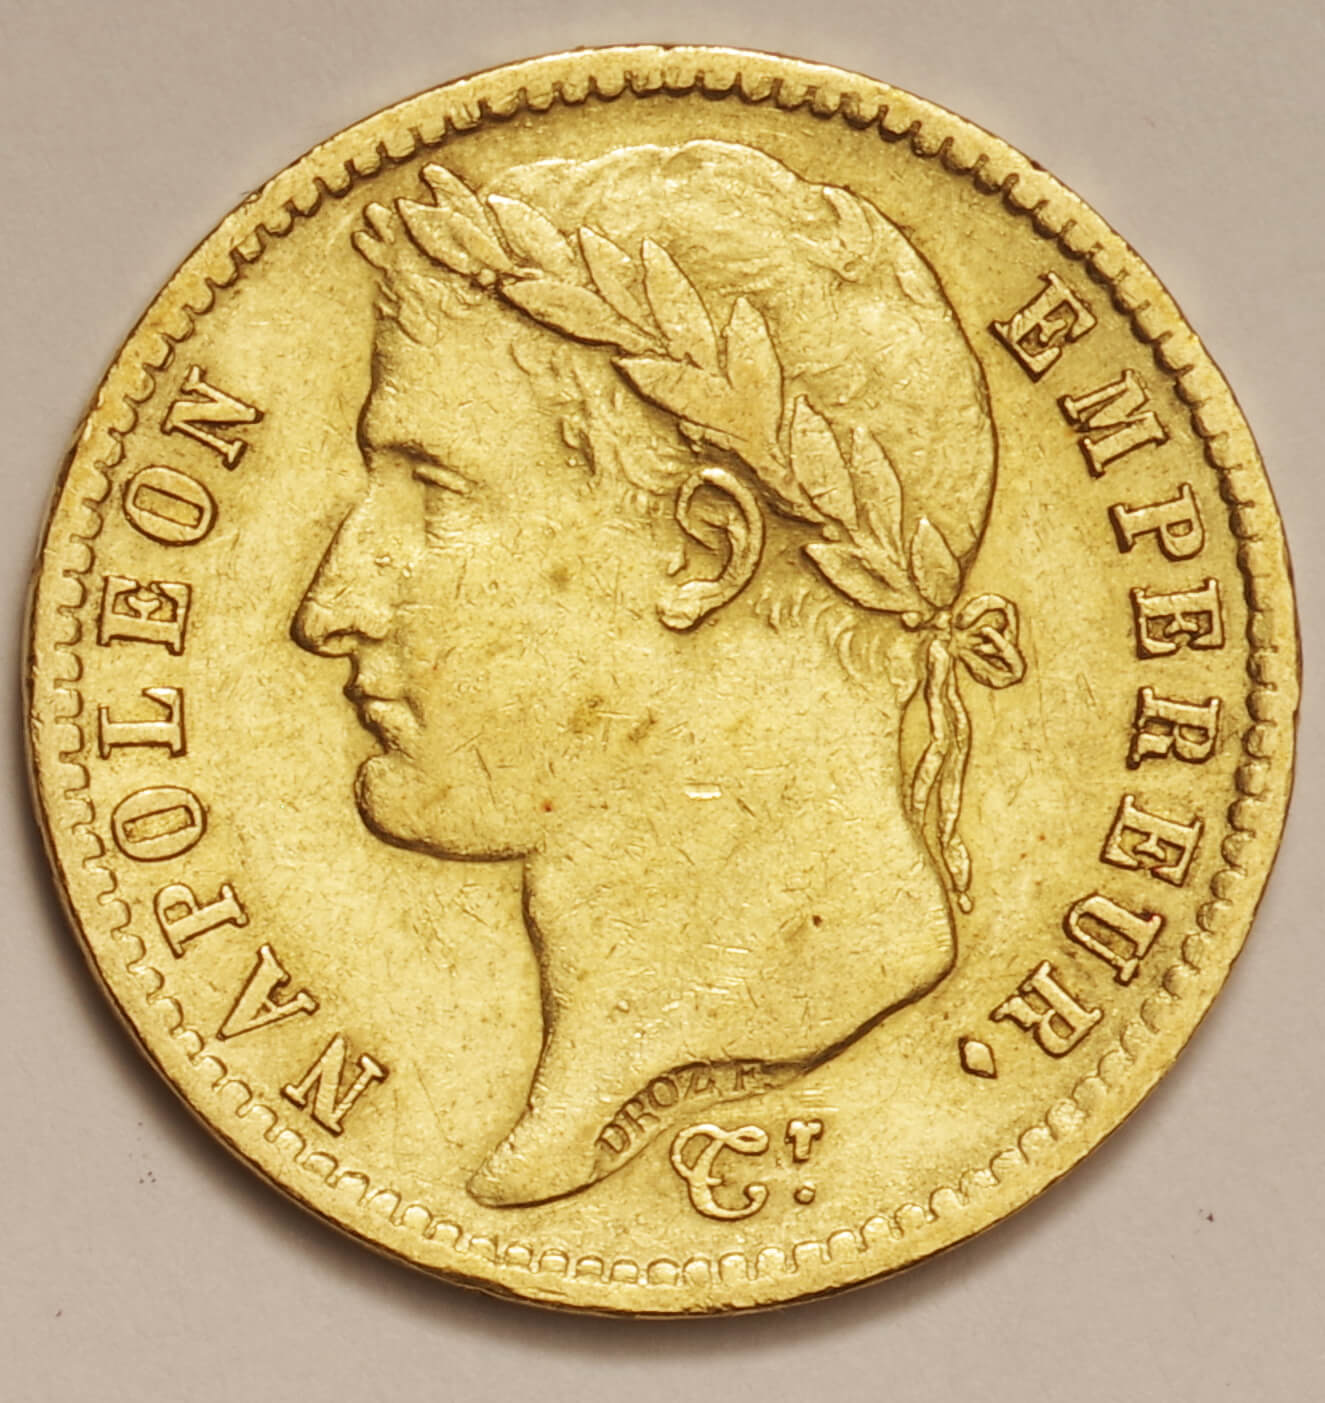 フランス-France. ナポレオン1世 月桂冠像 20フラン金貨 1813年(A 